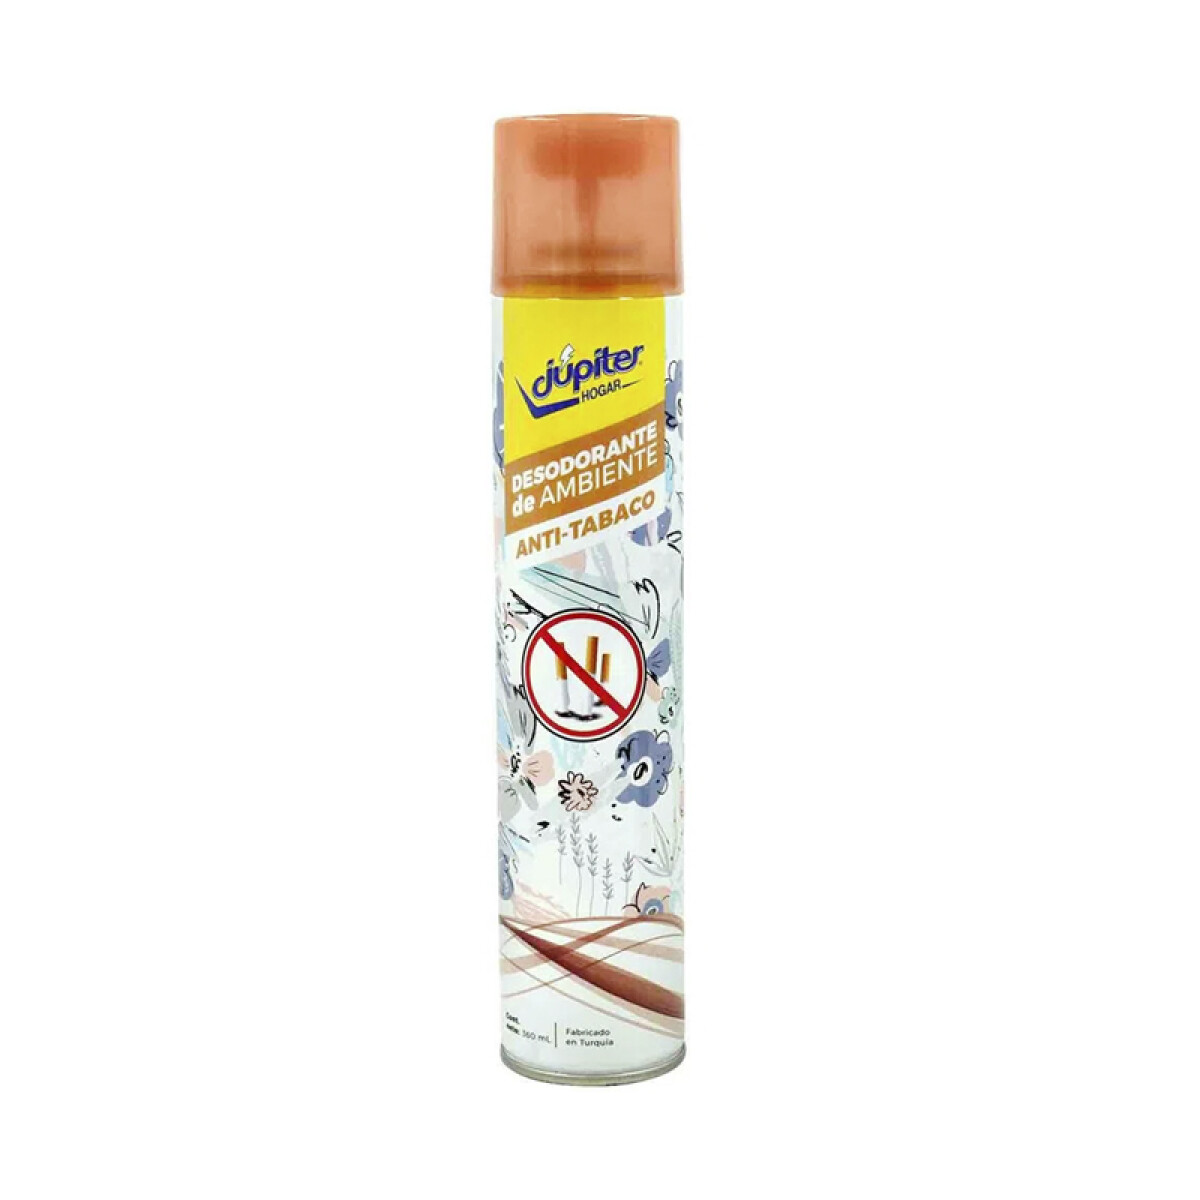 Desodorante de Ambiente JUPITER 360ml - Antitabaco 